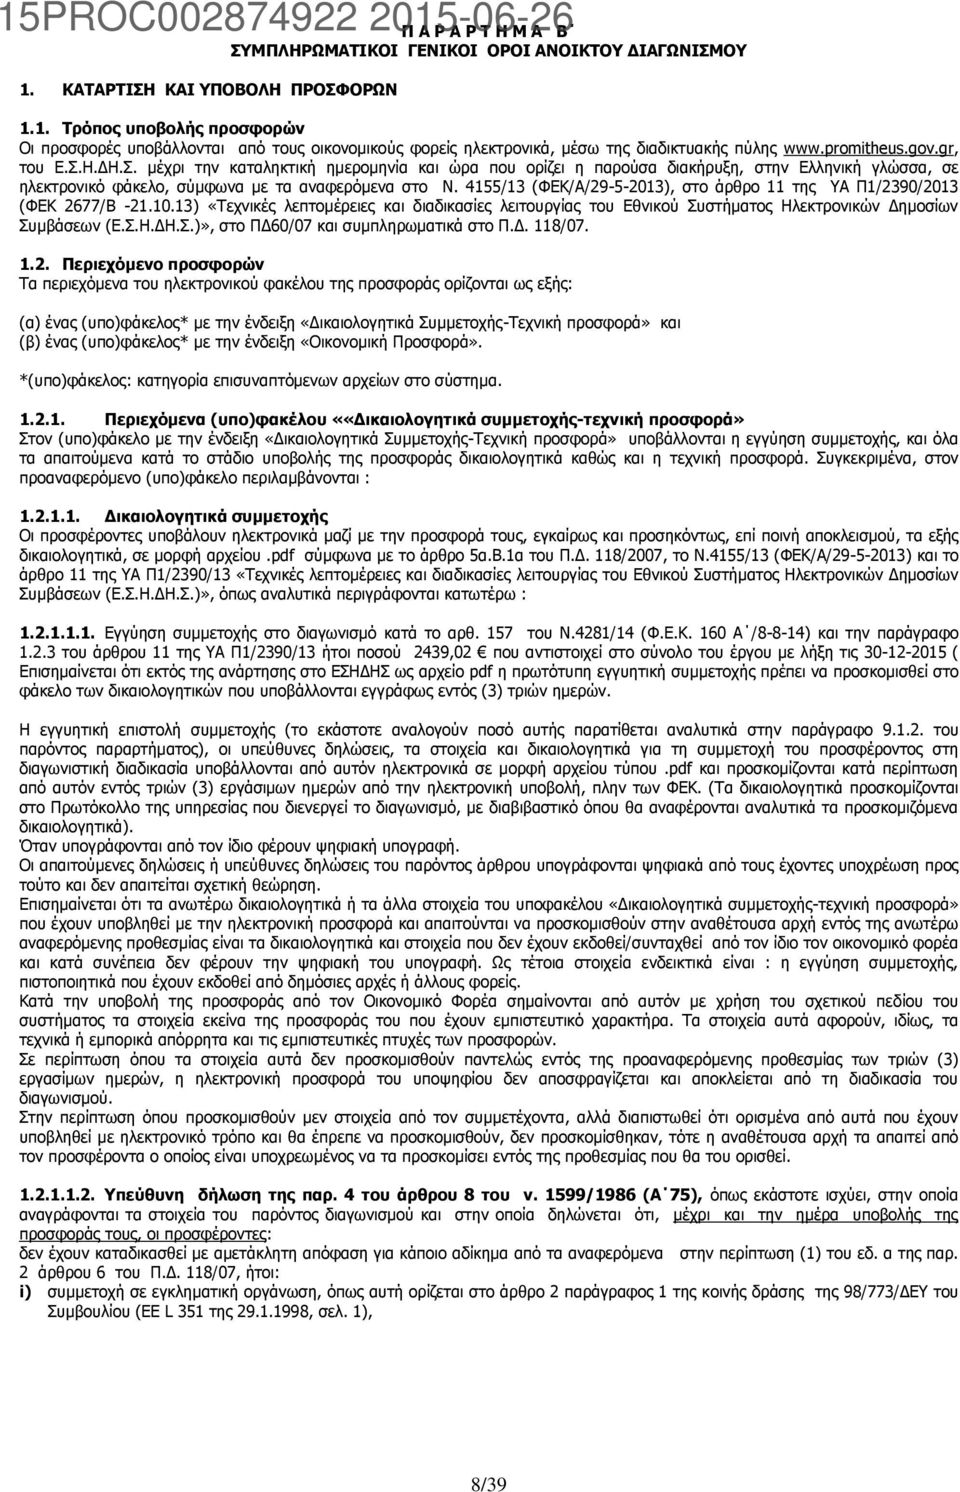 4155/13 (ΦΕΚ/Α/29-5-2013), στο άρθρο 11 της ΥΑ Π1/2390/2013 (ΦΕΚ 2677/Β -21.10.13) «Τεχνικές λεπτομέρειες και διαδικασίες λειτουργίας του Εθνικού Συστήματος Ηλεκτρονικών Δημοσίων Συμβάσεων (Ε.Σ.Η.ΔΗ.